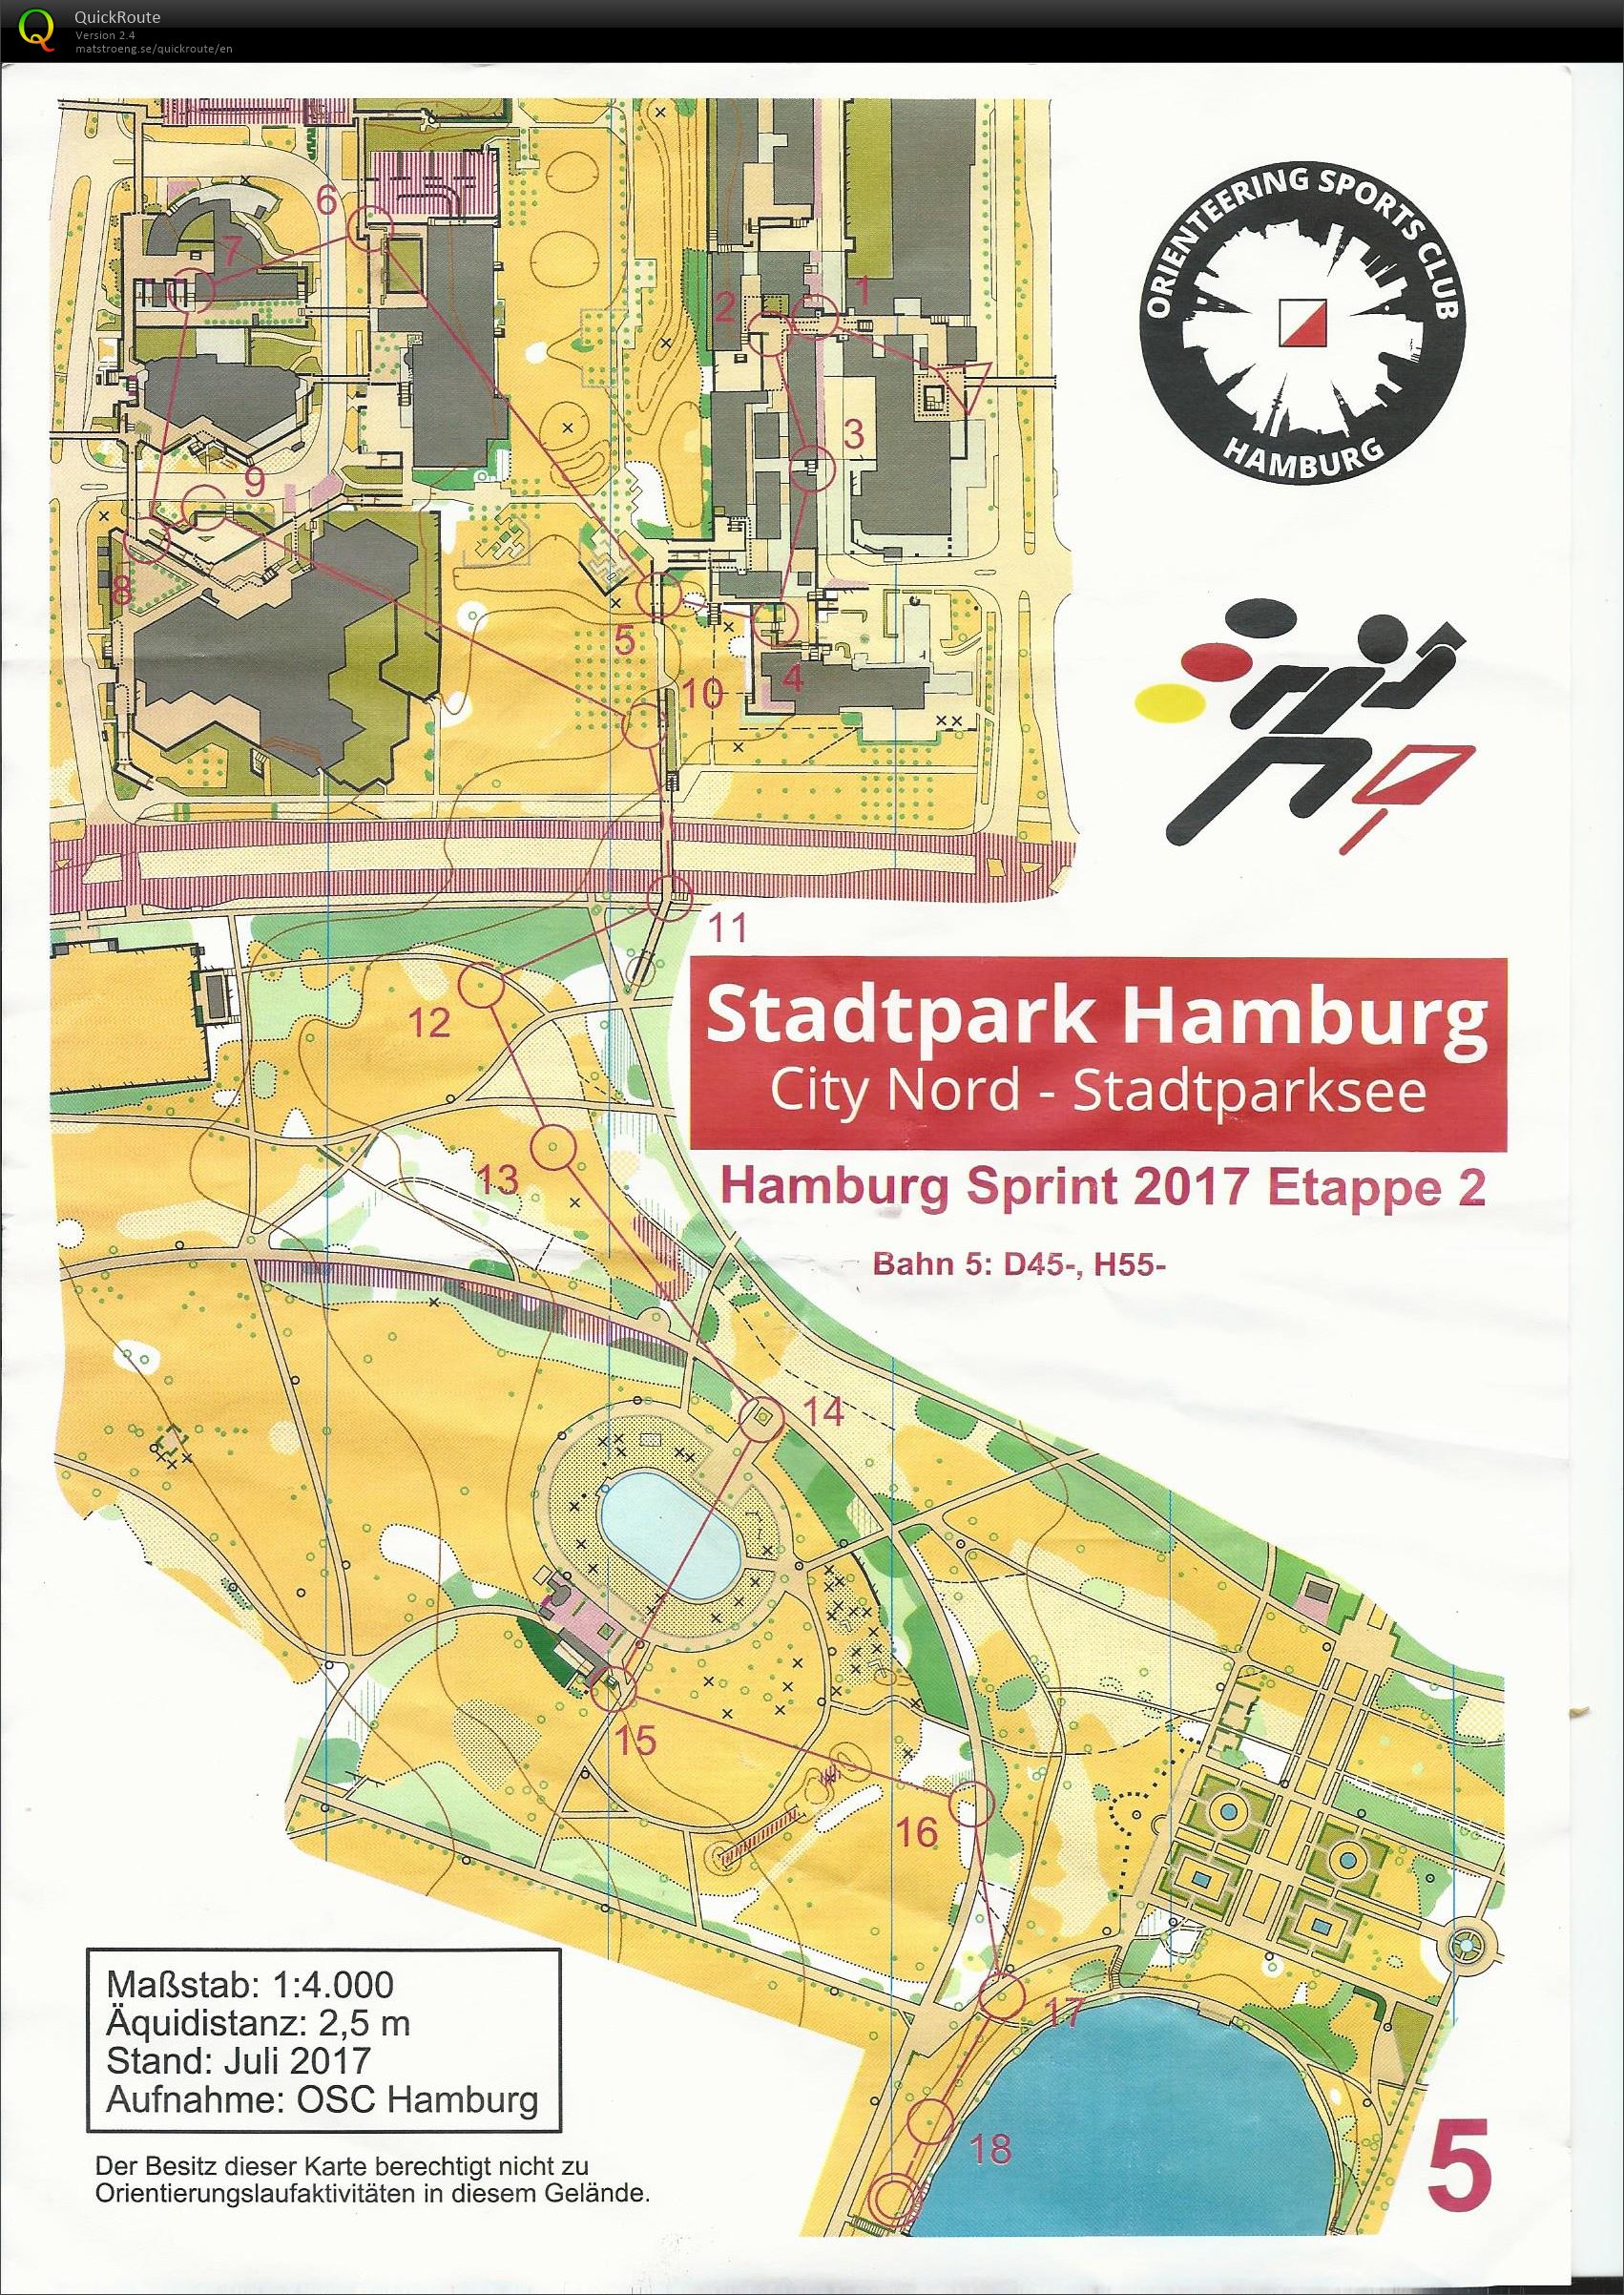 Hamburg sprint 2017 etape 2 (12/08/2017)